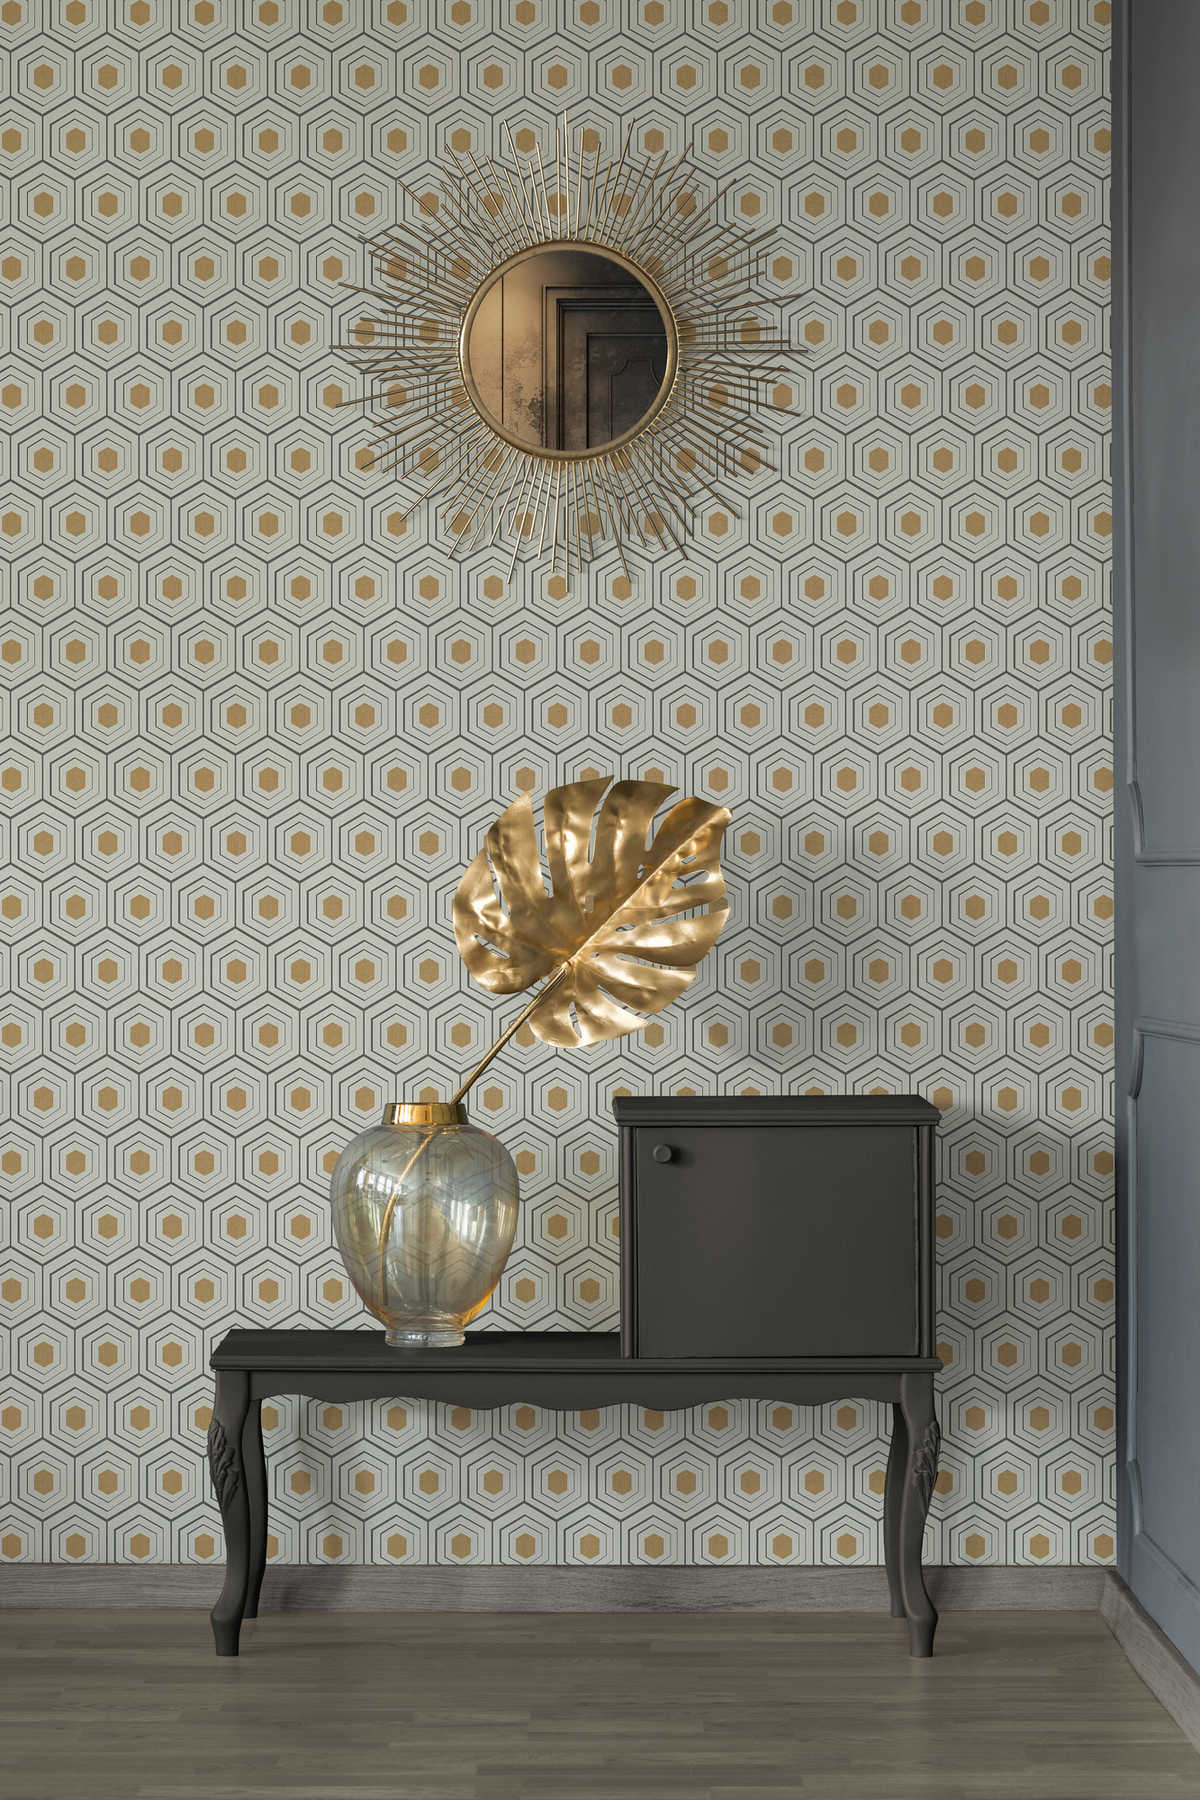             Retro wallpaper 50s honeycomb pattern & metallic accent - beige
        